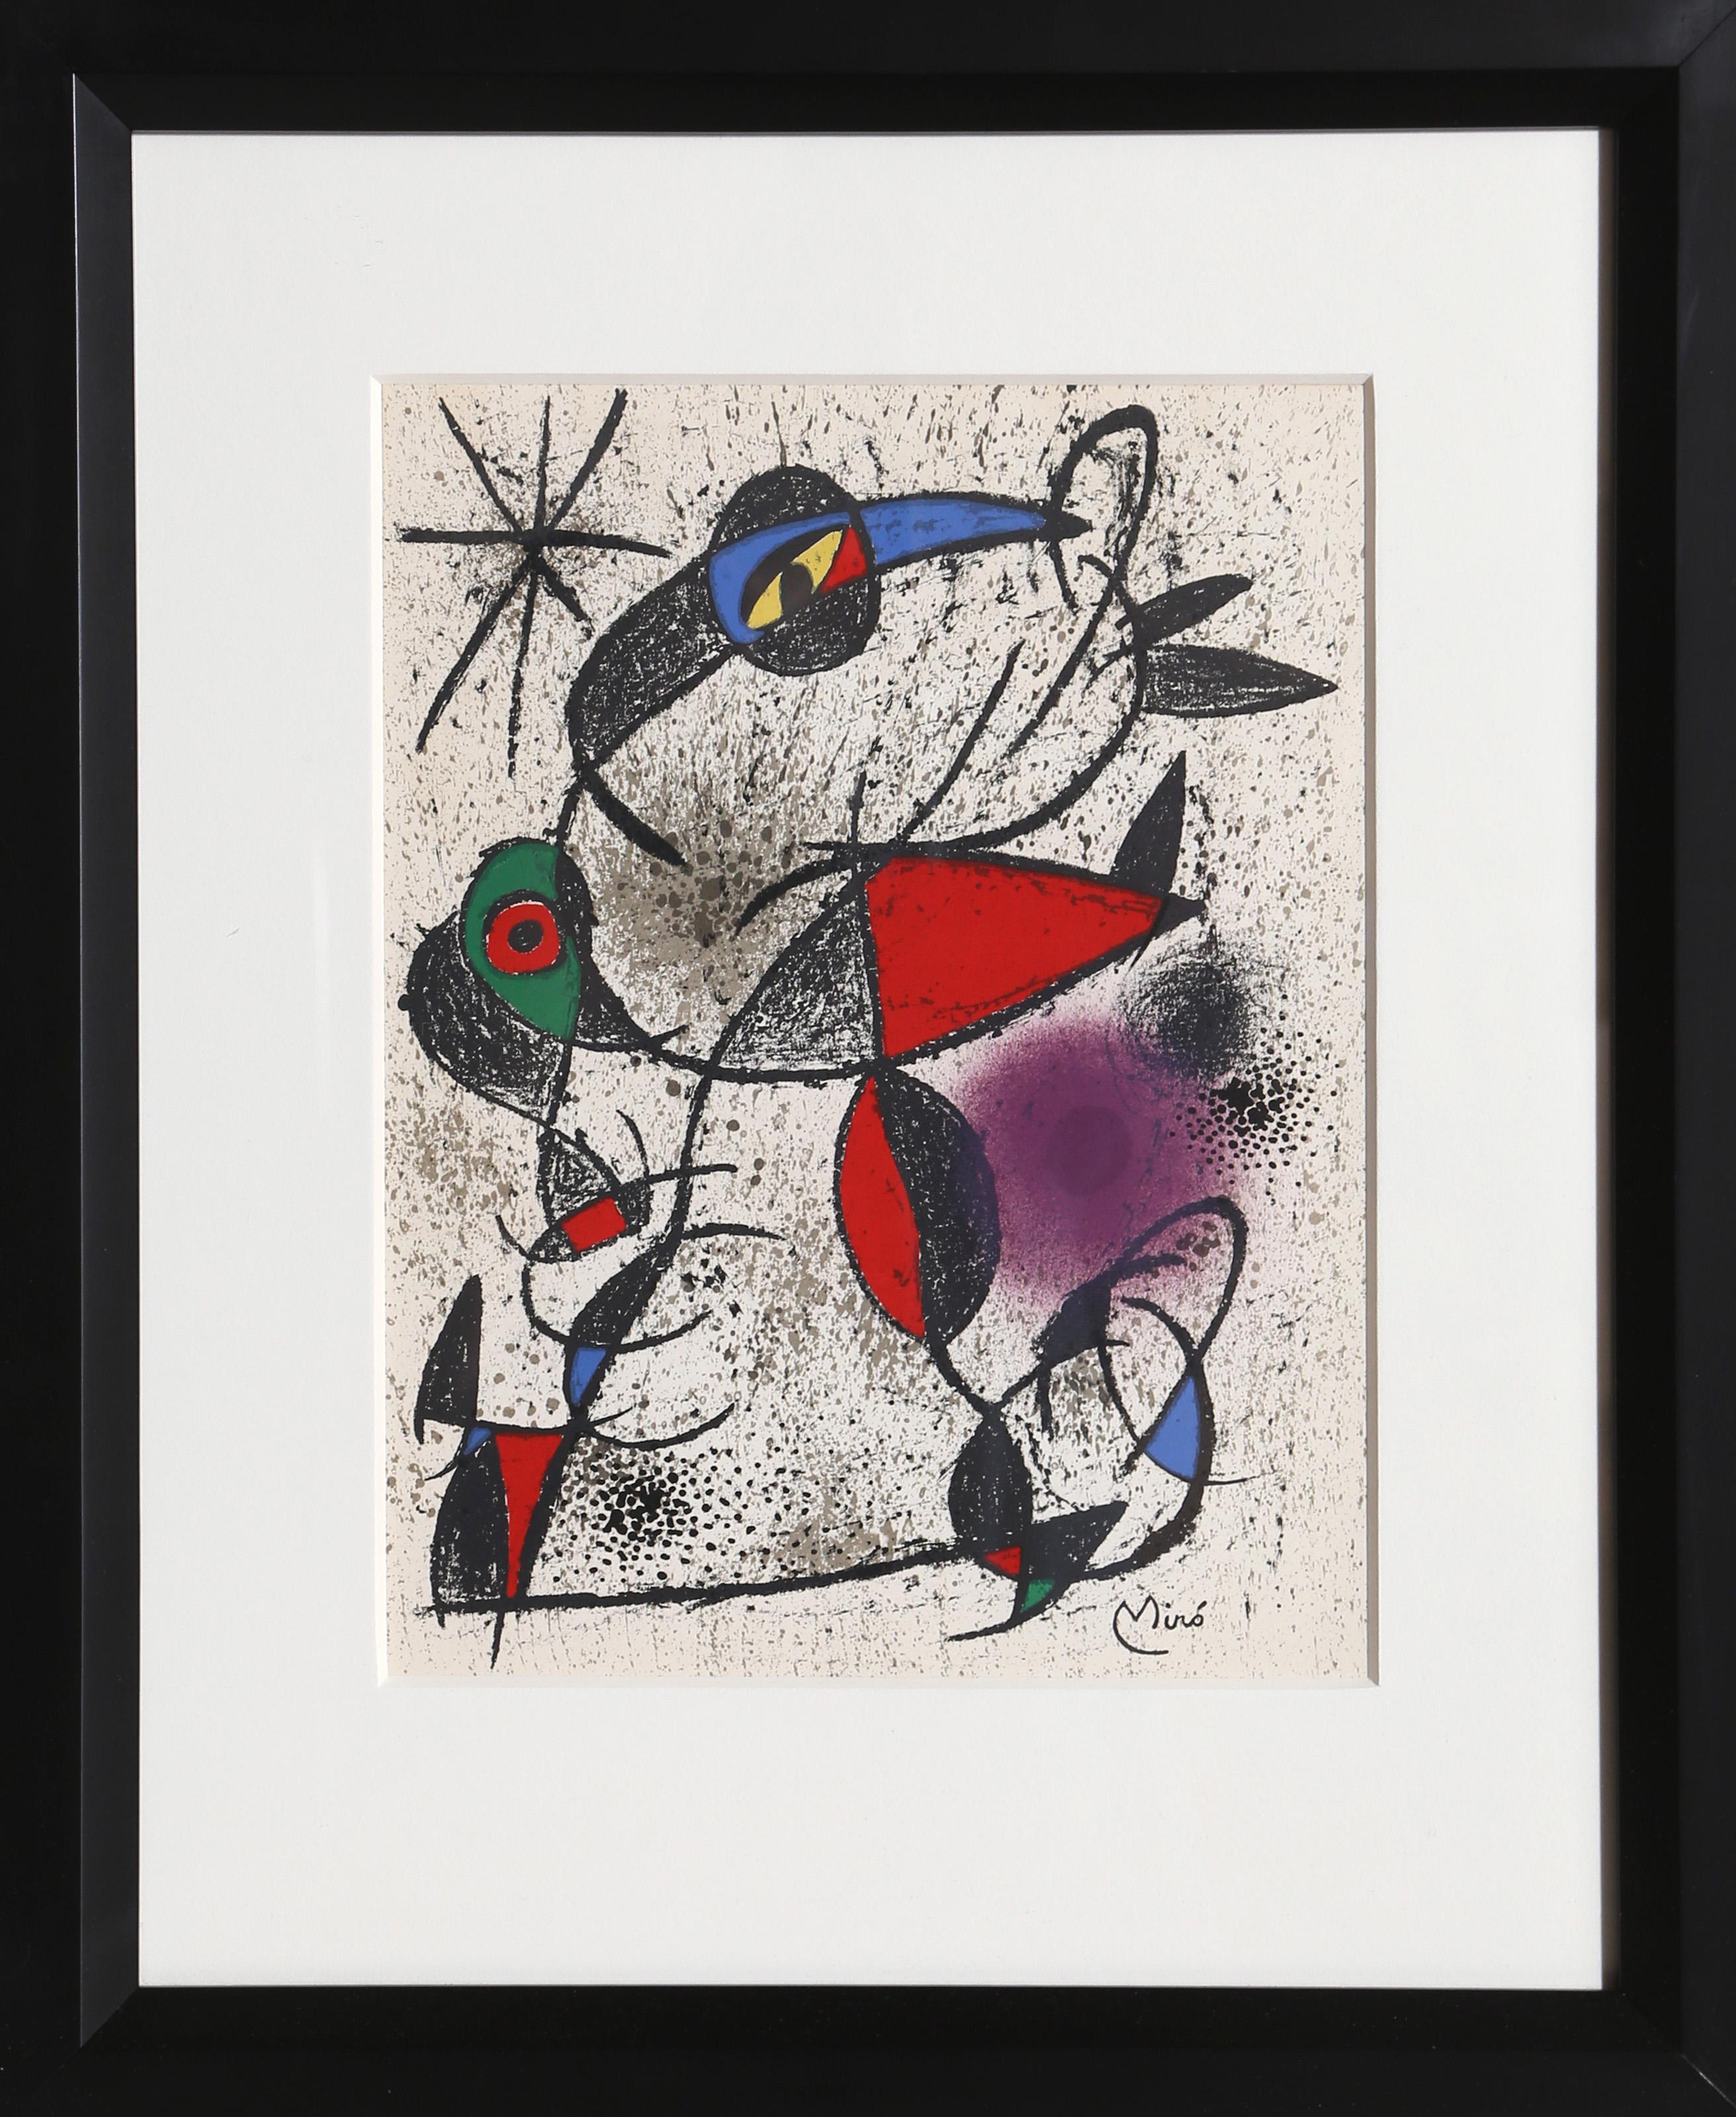 Joan Miró Abstract Print – Jaillie du Calcaire aus Souvenirs de Portraits d'Artistes von Joan Miro